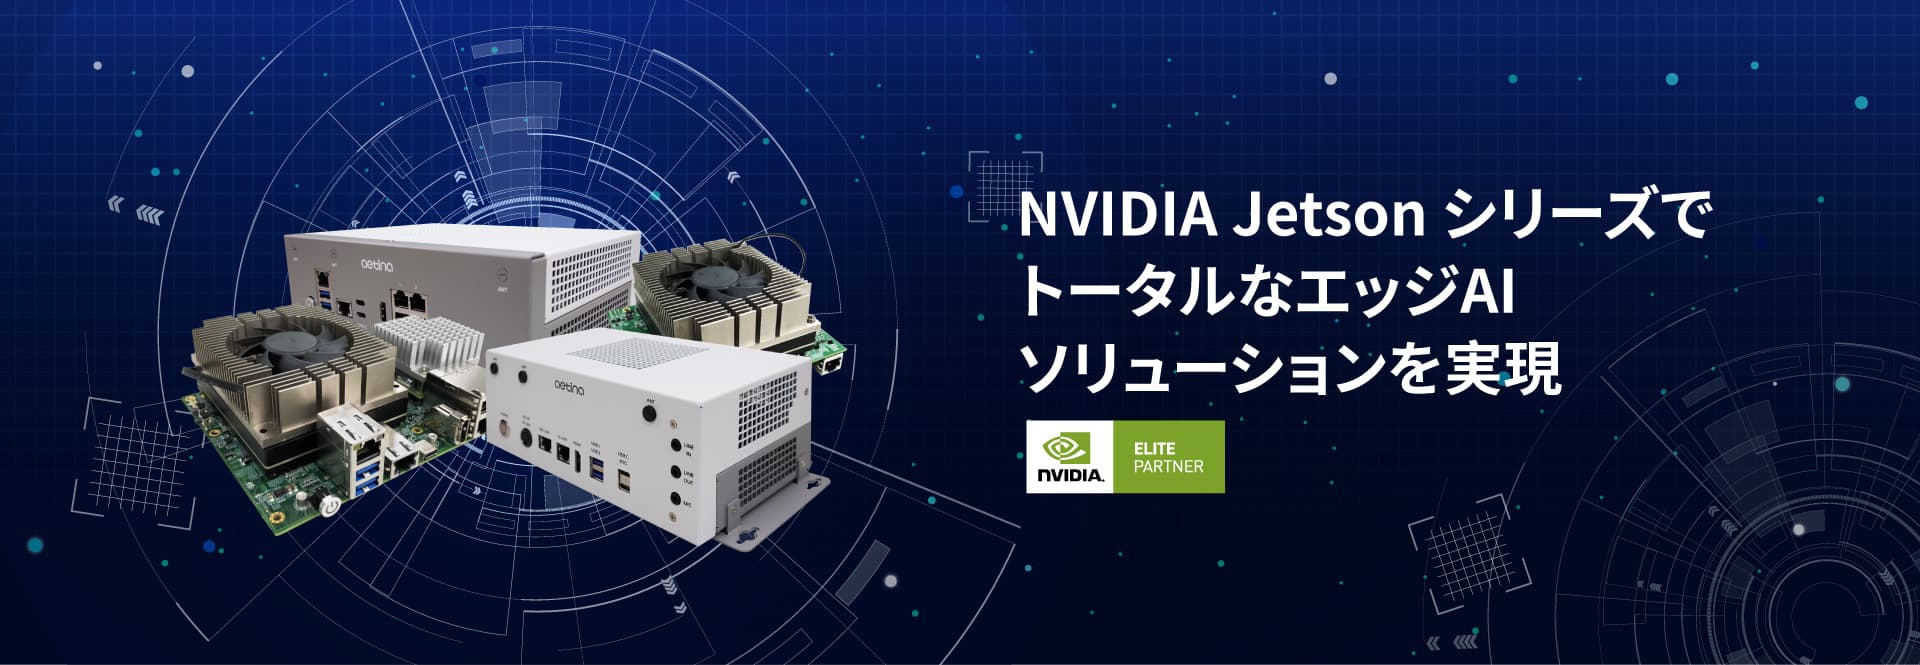 NVIDIA Jetson シリーズでトータルなエッジAIソリューションを実現